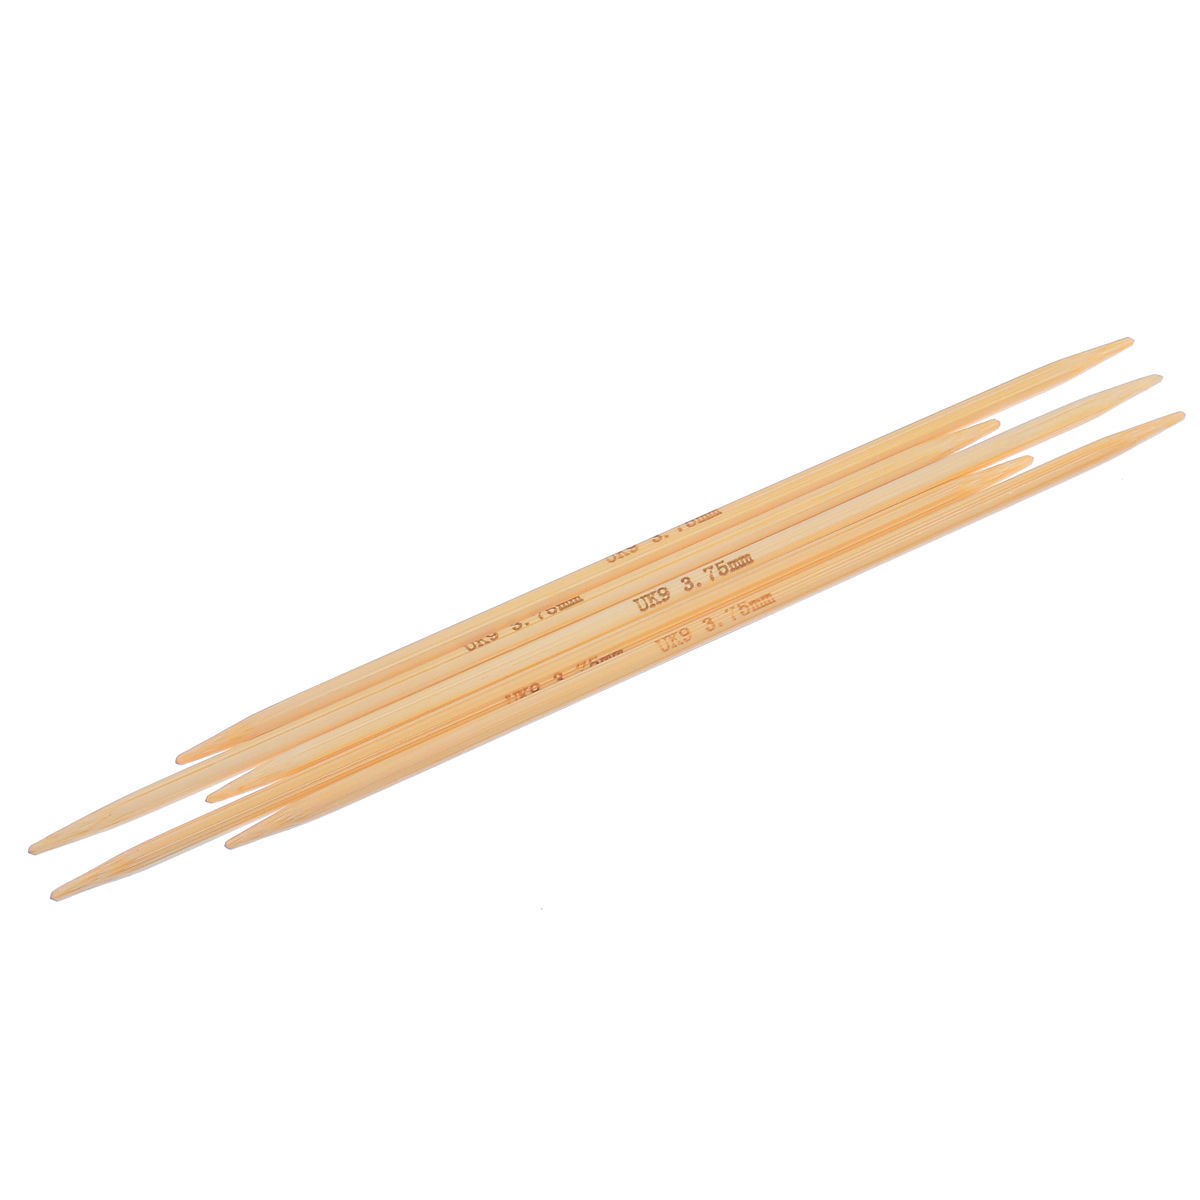 (UK9 3.75mm) 竹 ダブルポイント 編み針 ナチュラル 15cm 長さ、 1 セット ( 5 個/セット) の画像